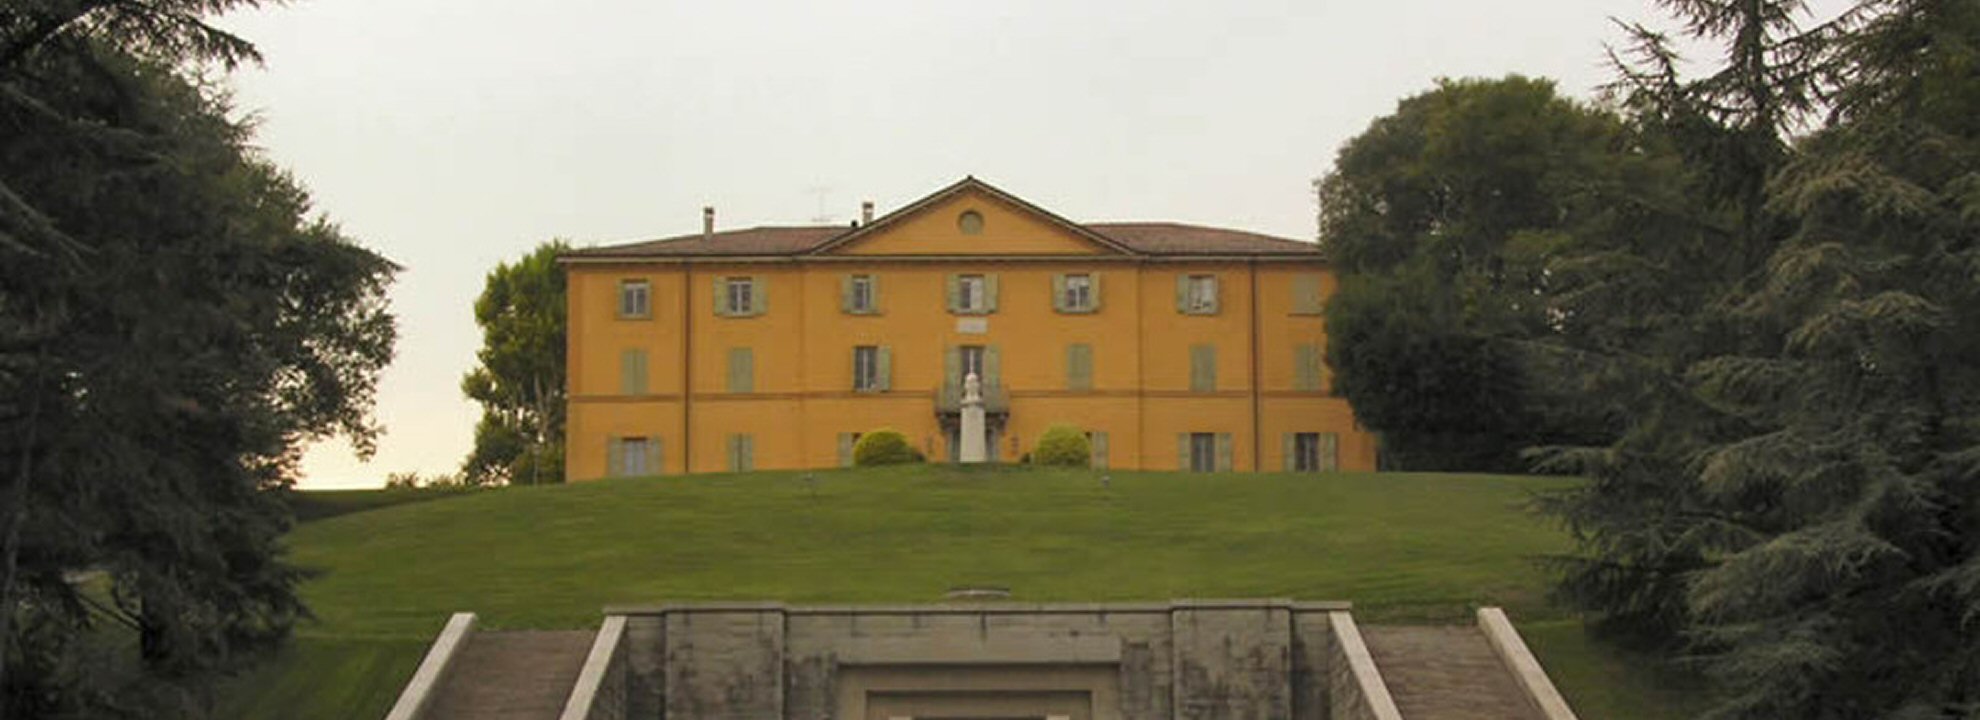 Museo Marconi a Villa Grifoni - Pontecchio Marconi